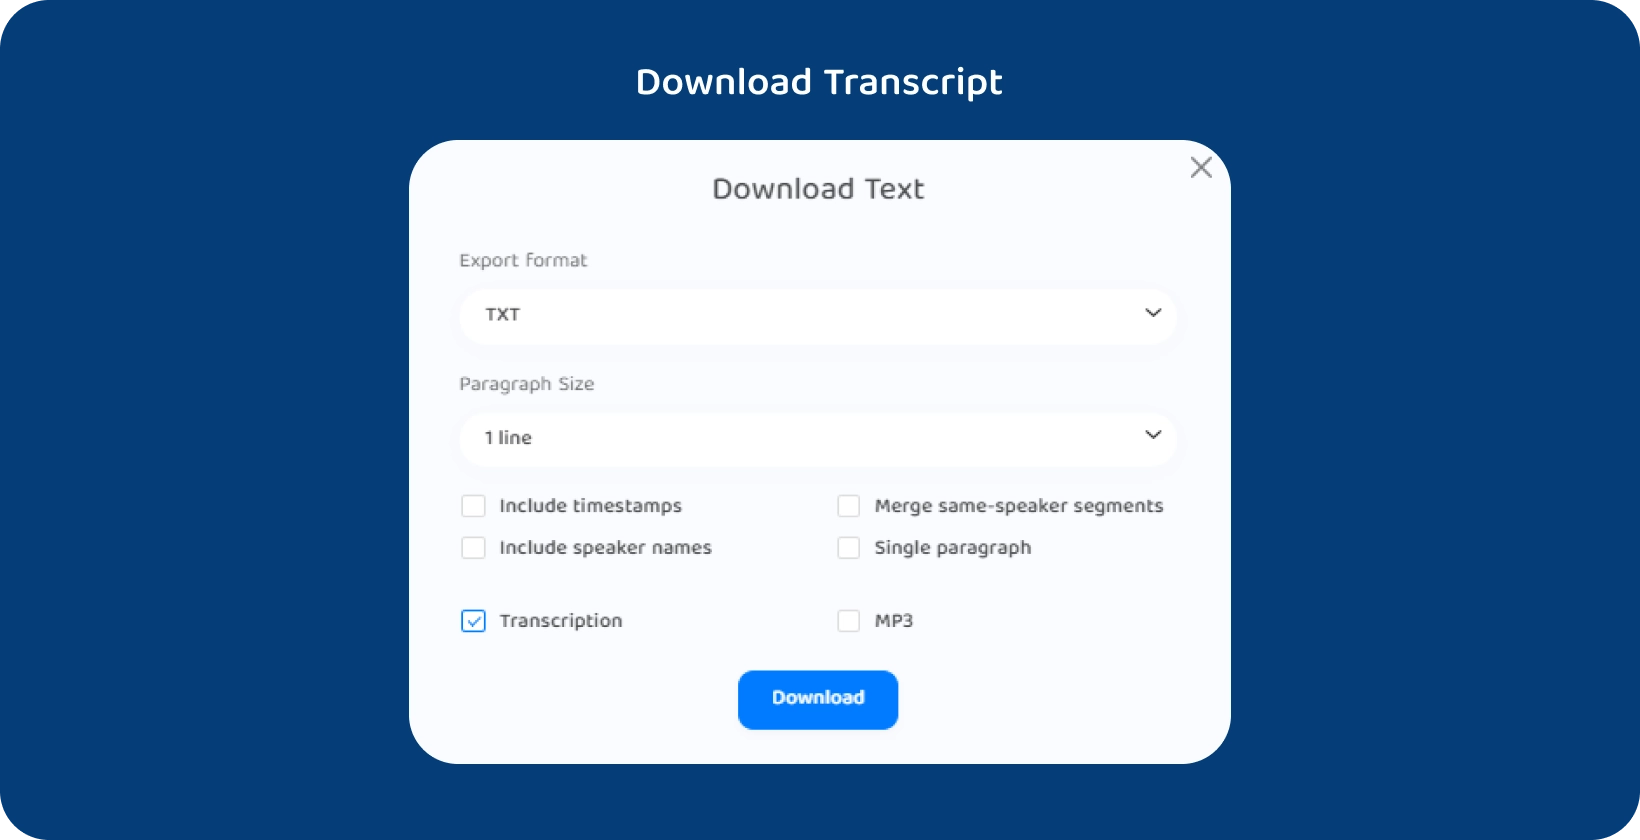 Interfaz de Transkriptor que muestra opciones para descargar el texto de una conferencia transcrita.